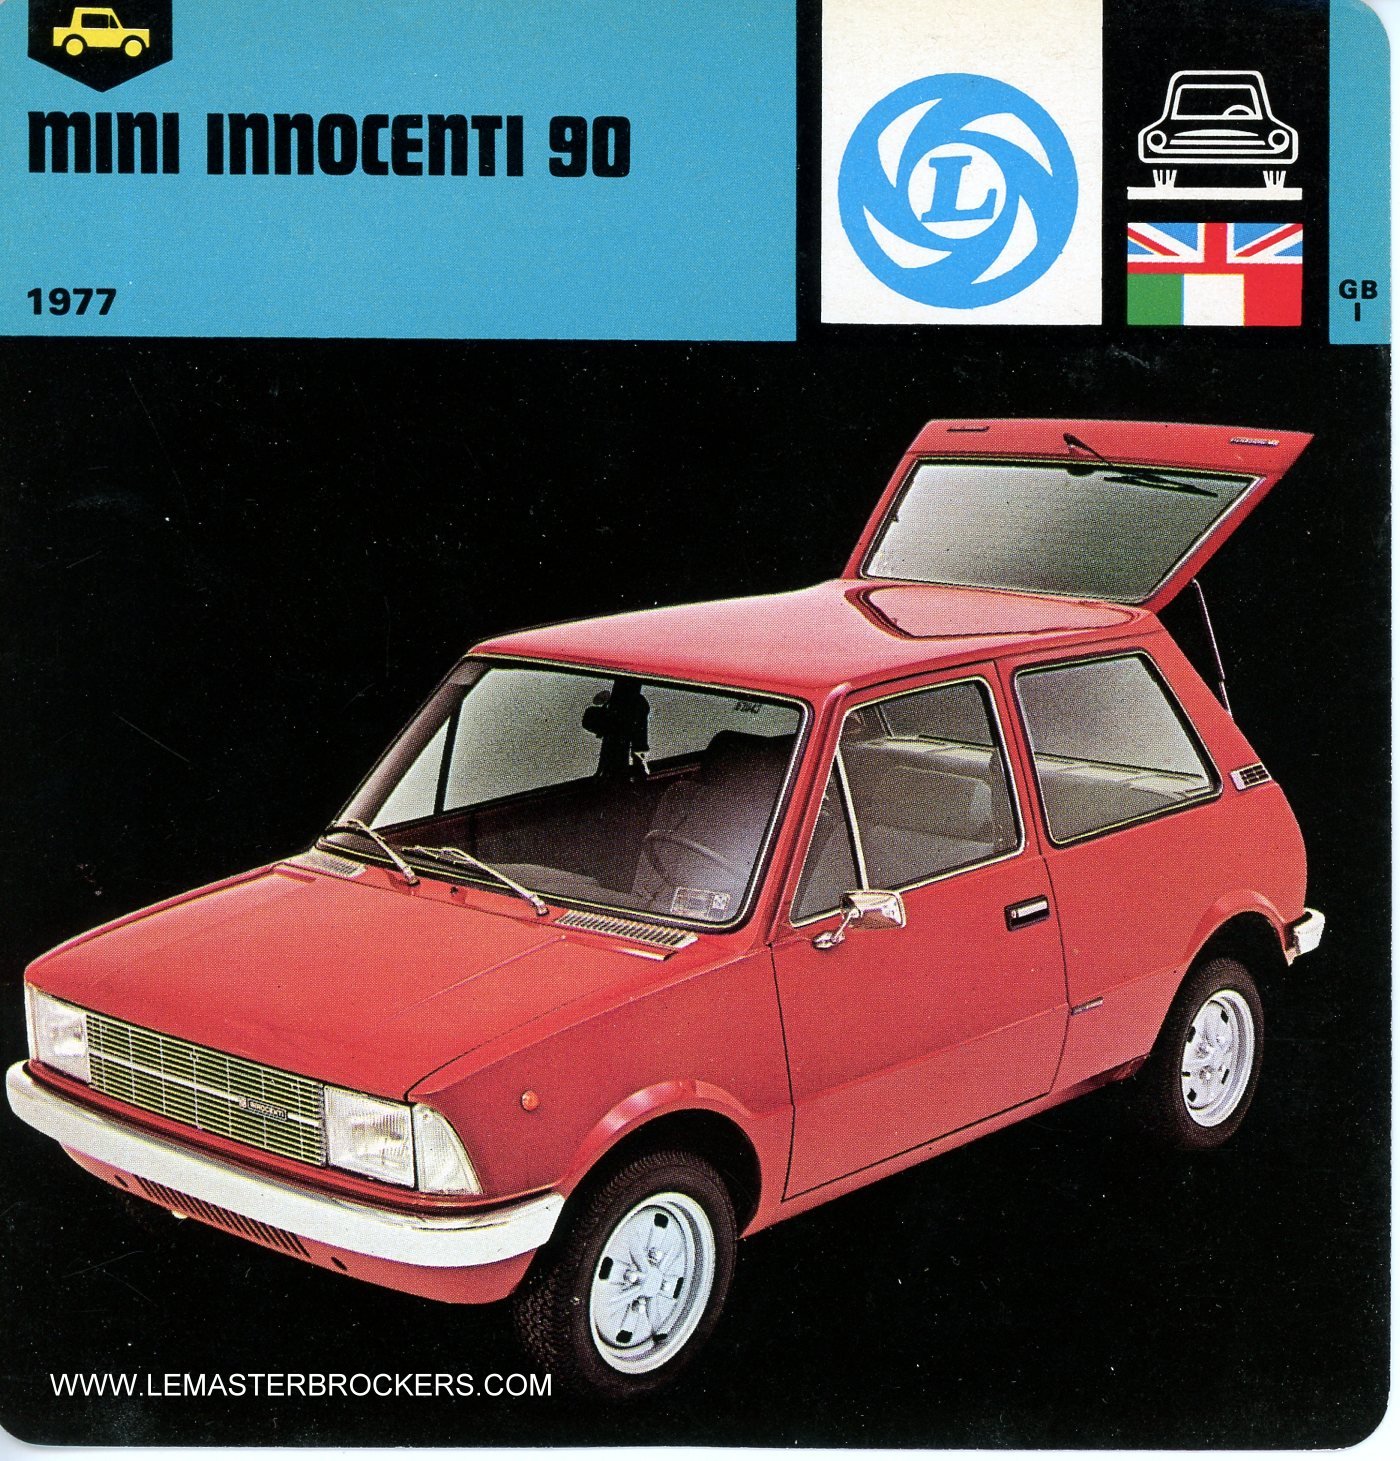 FICHE AUTO MINI INNOCENTI 90 - 1977